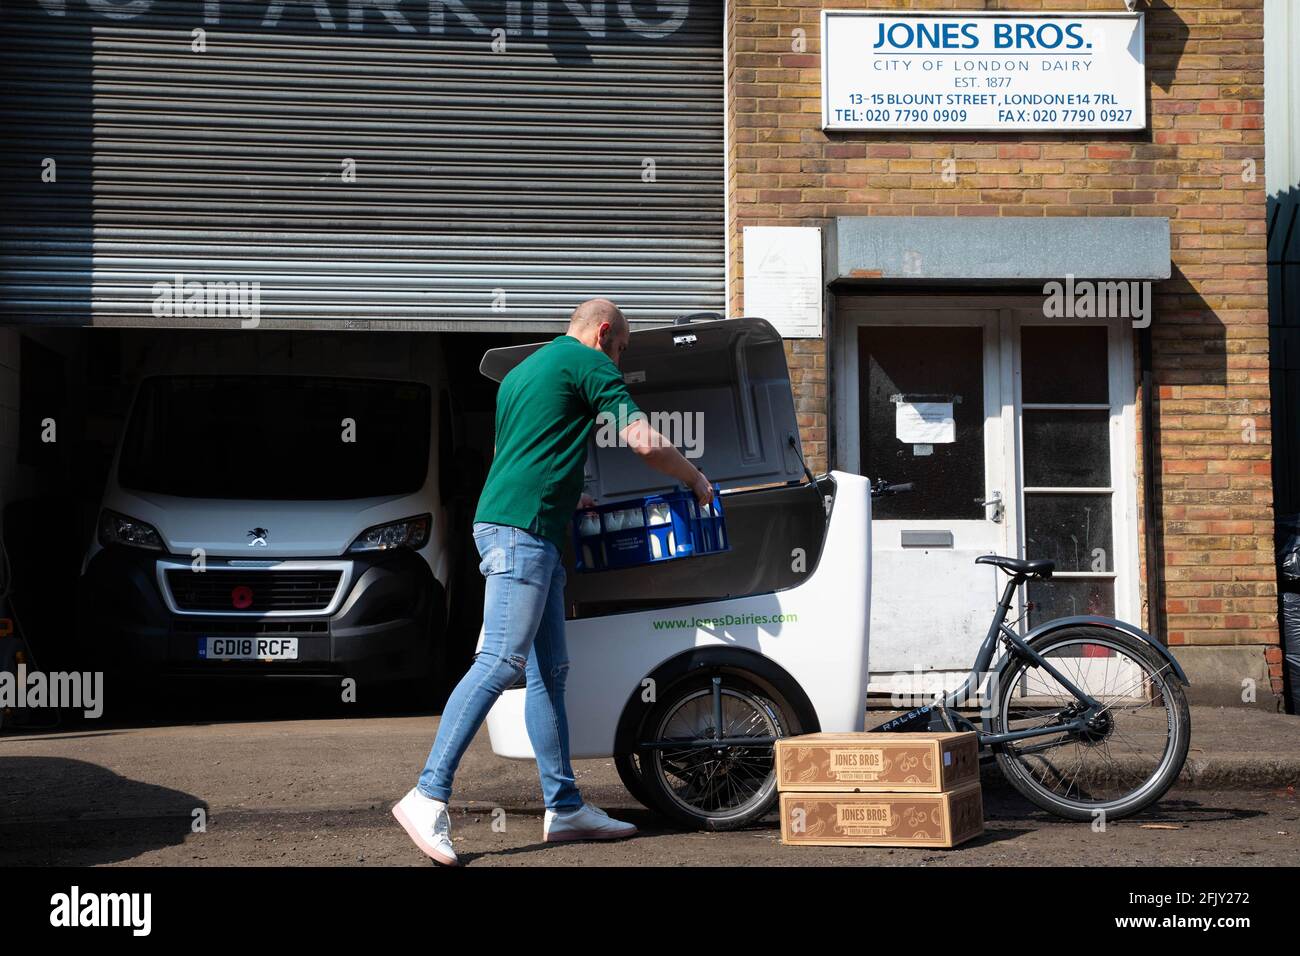 REDAKTIONELLE VERWENDUNG NUR Henry Jones von Jones Bros Dairy lädt Milch in ein E-Cargo-Fahrrad von Raleigh, da die Molkerei die Rückgabe des Fahrrads auf ihrer täglichen 10-Meilen-Lieferroute in London ankündigt, um die Emissionen zu reduzieren. Ausgabedatum: Dienstag, 27. April 2021. Stockfoto